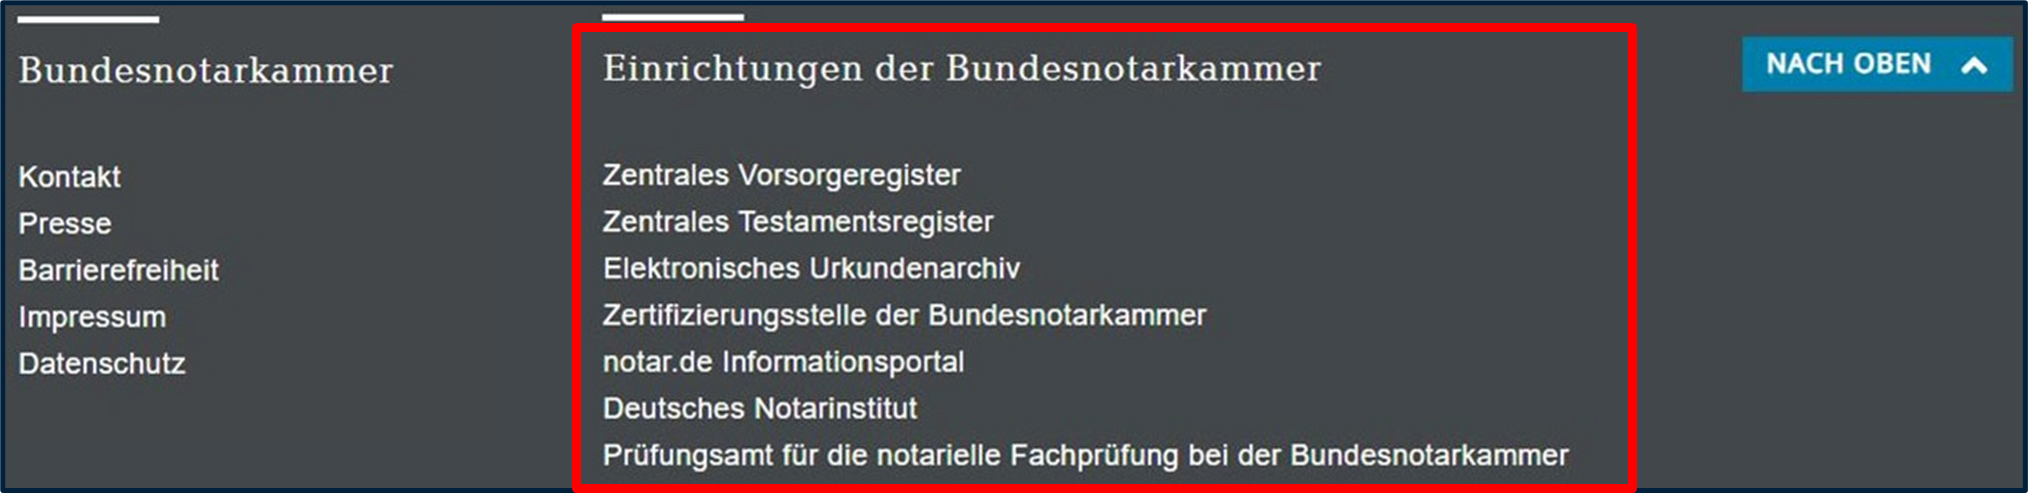 Screenshot Fußzeile von www.bnotk.de - Bereich "Einrichtungen"